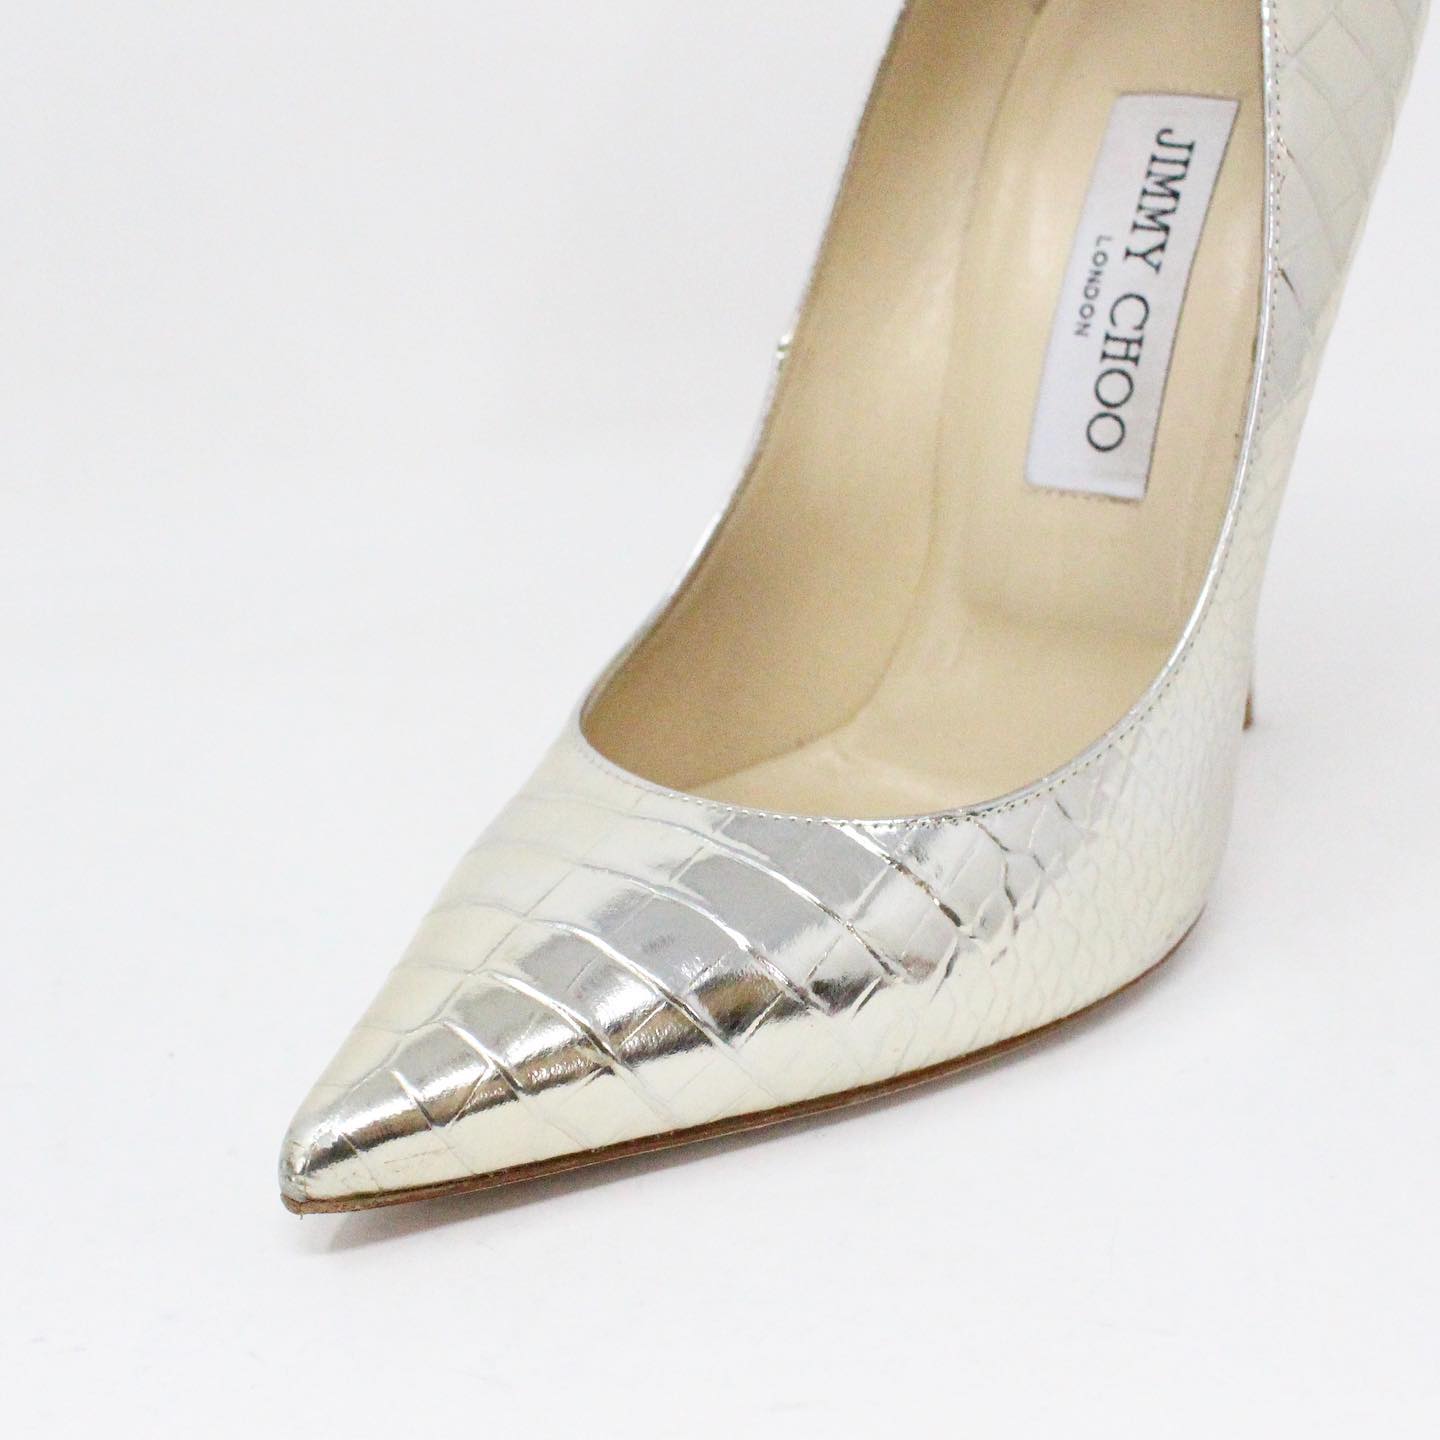 Louis Vuitton Women's Pumps Shoes In White Leather (eu 37) - (us 7